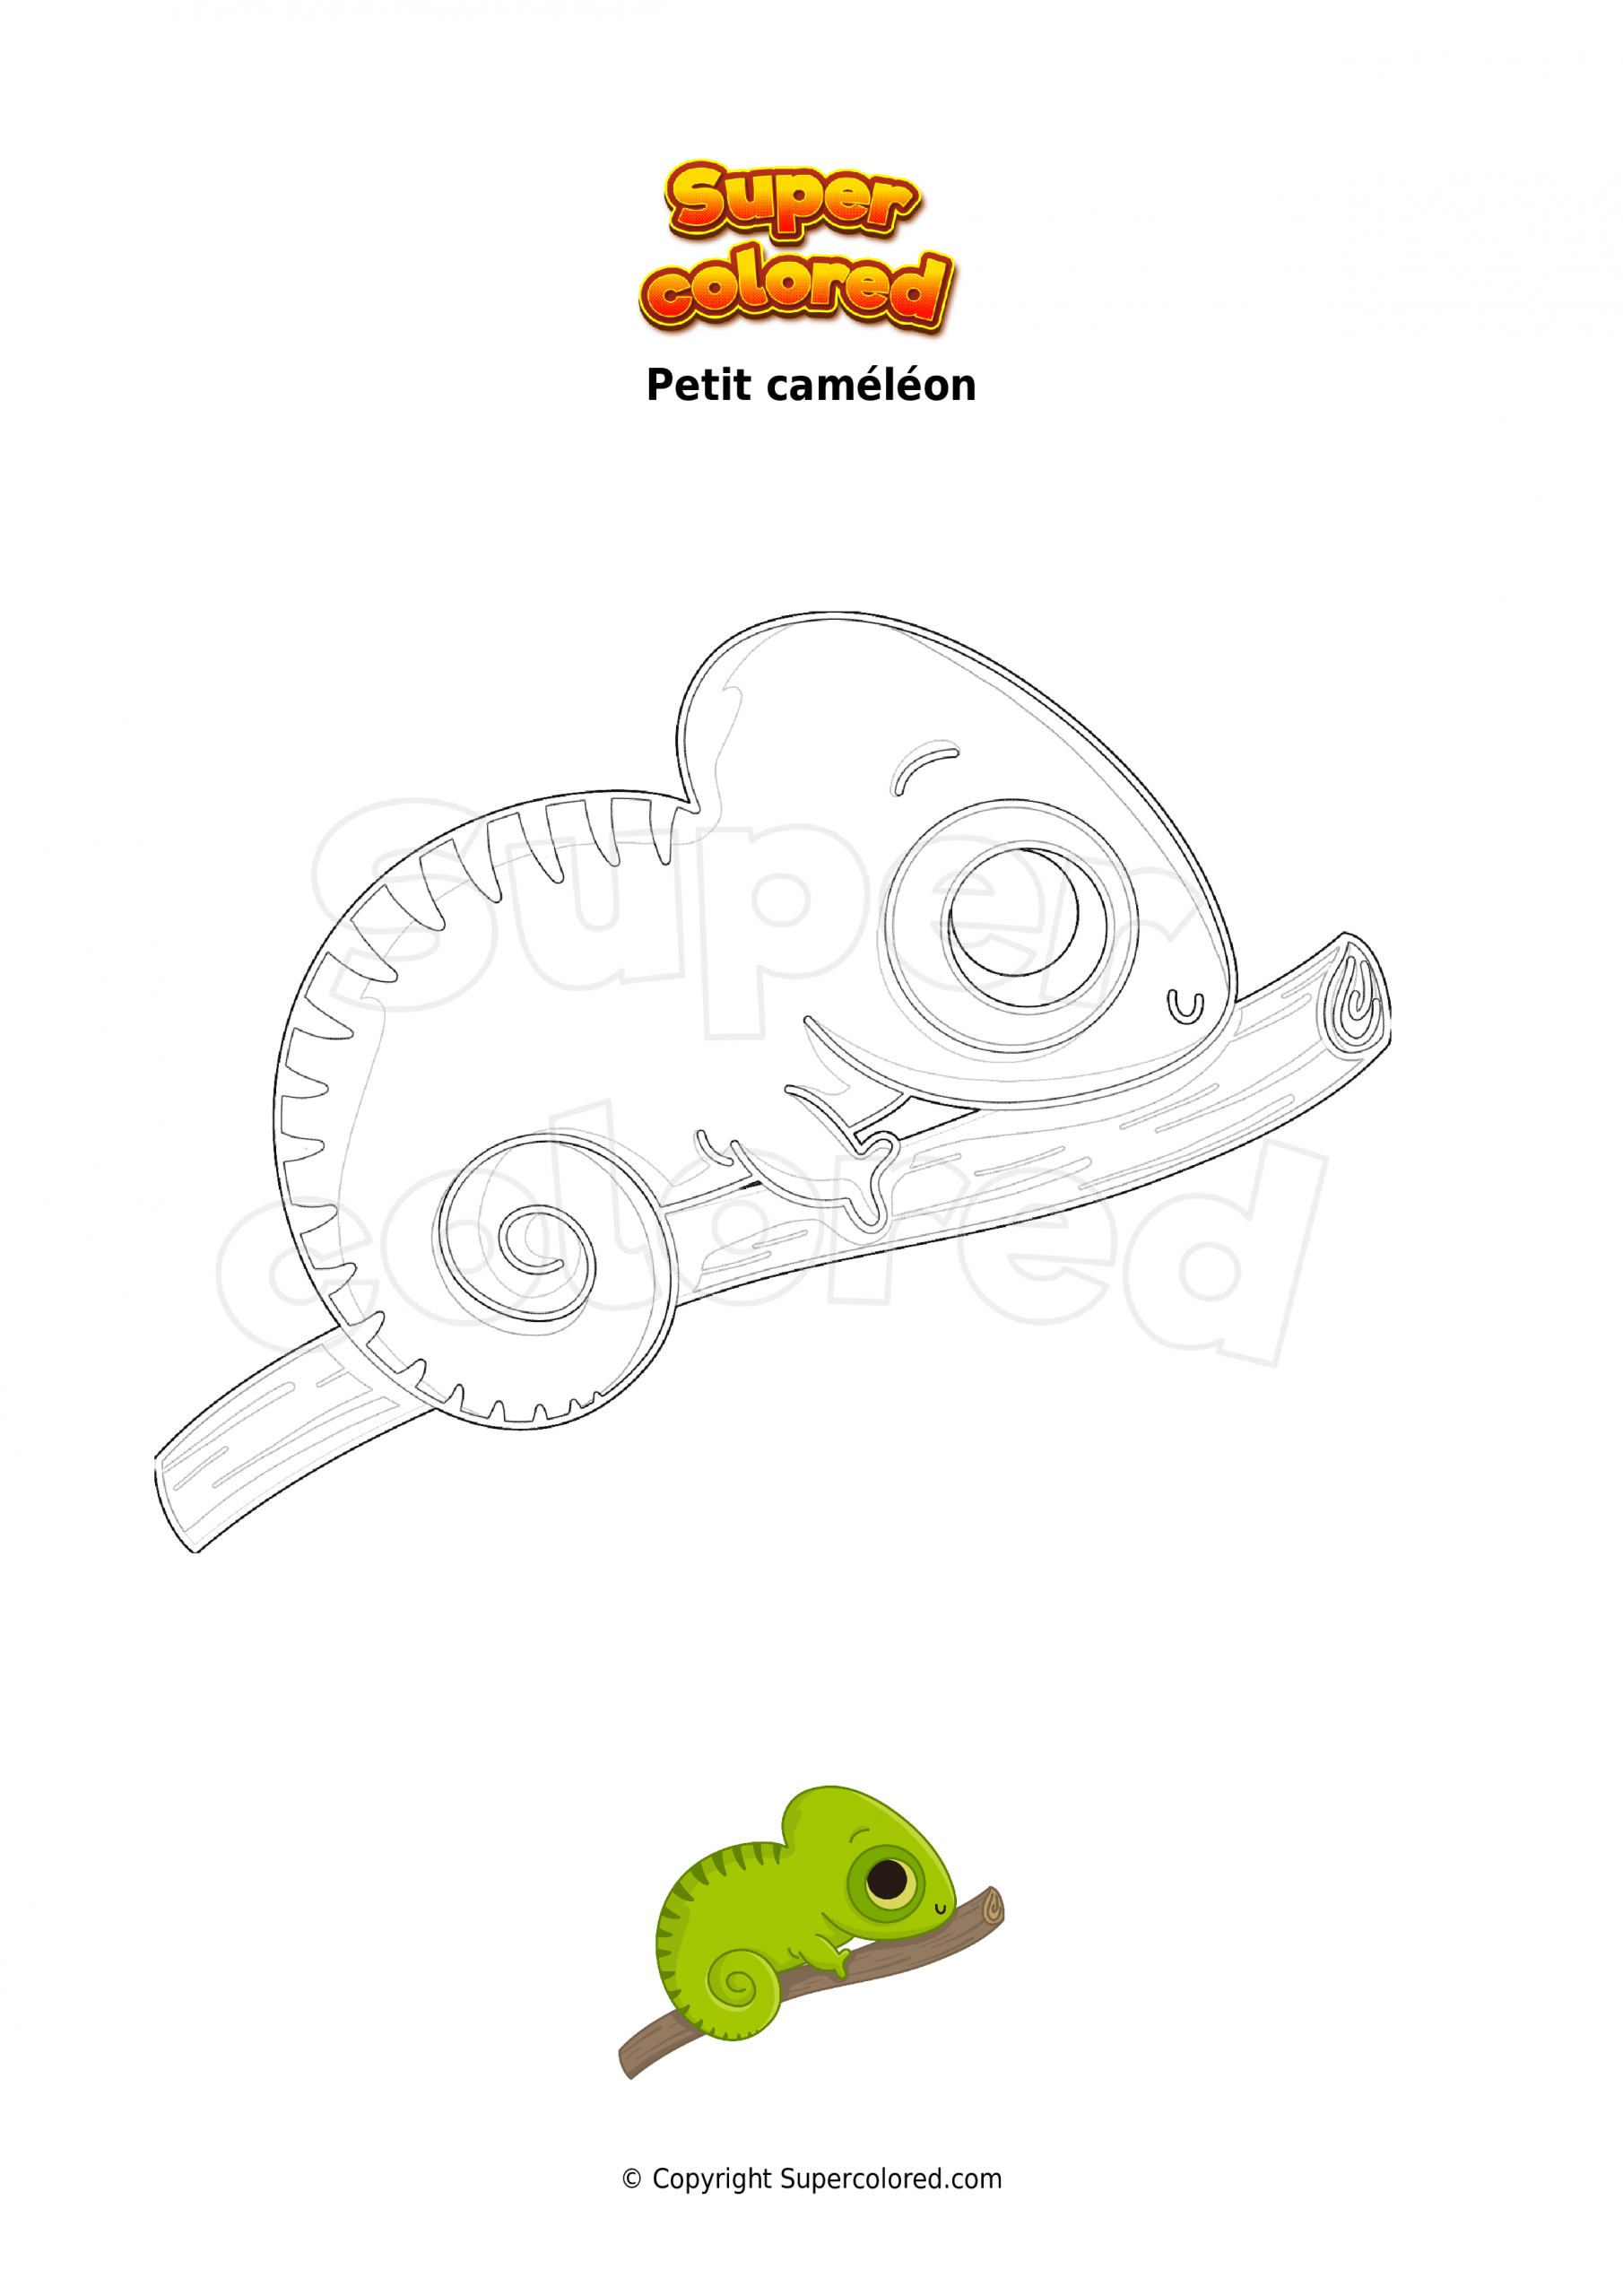 Coloriage Petit Caméléon - Supercolored pour Coloriage Cameleon 